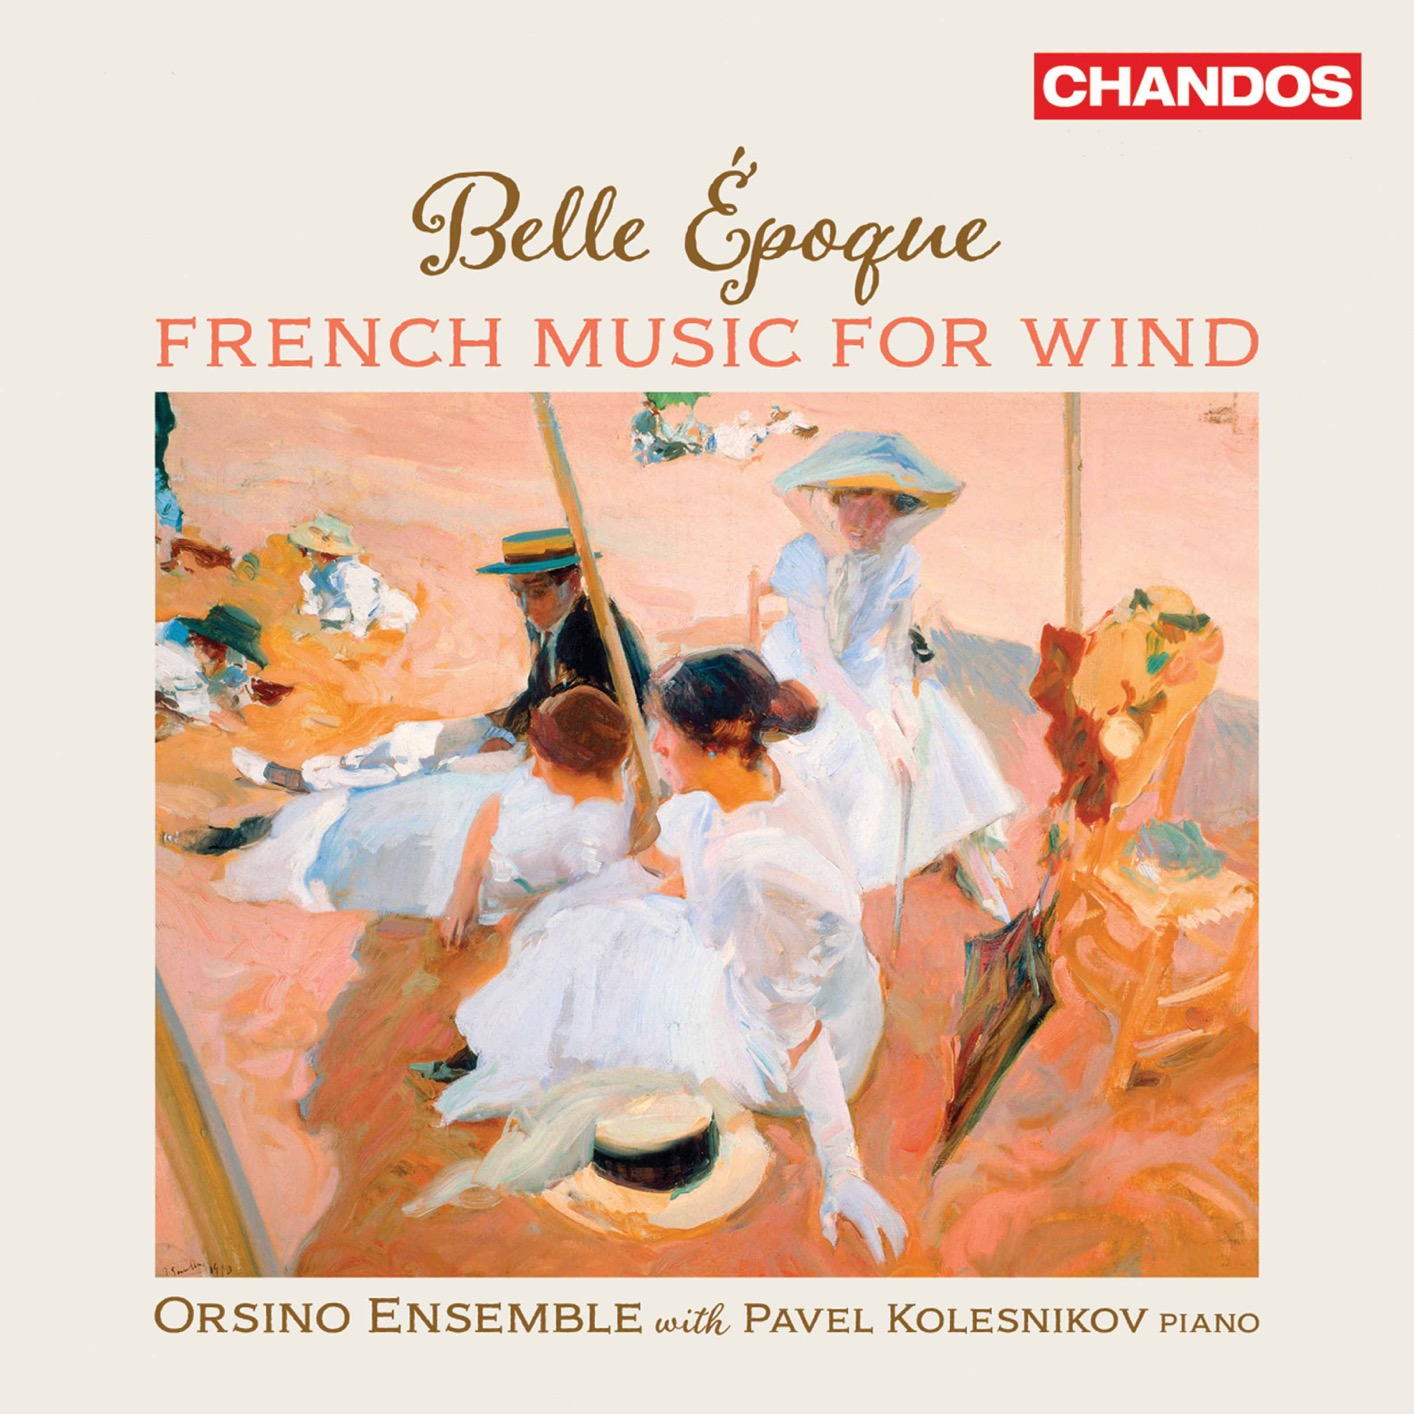 Orsino Ensemble & Pavel Kolesnikov - Belle epoque: French Music for Wind (2021) [FLAC 24bit/48kHz]